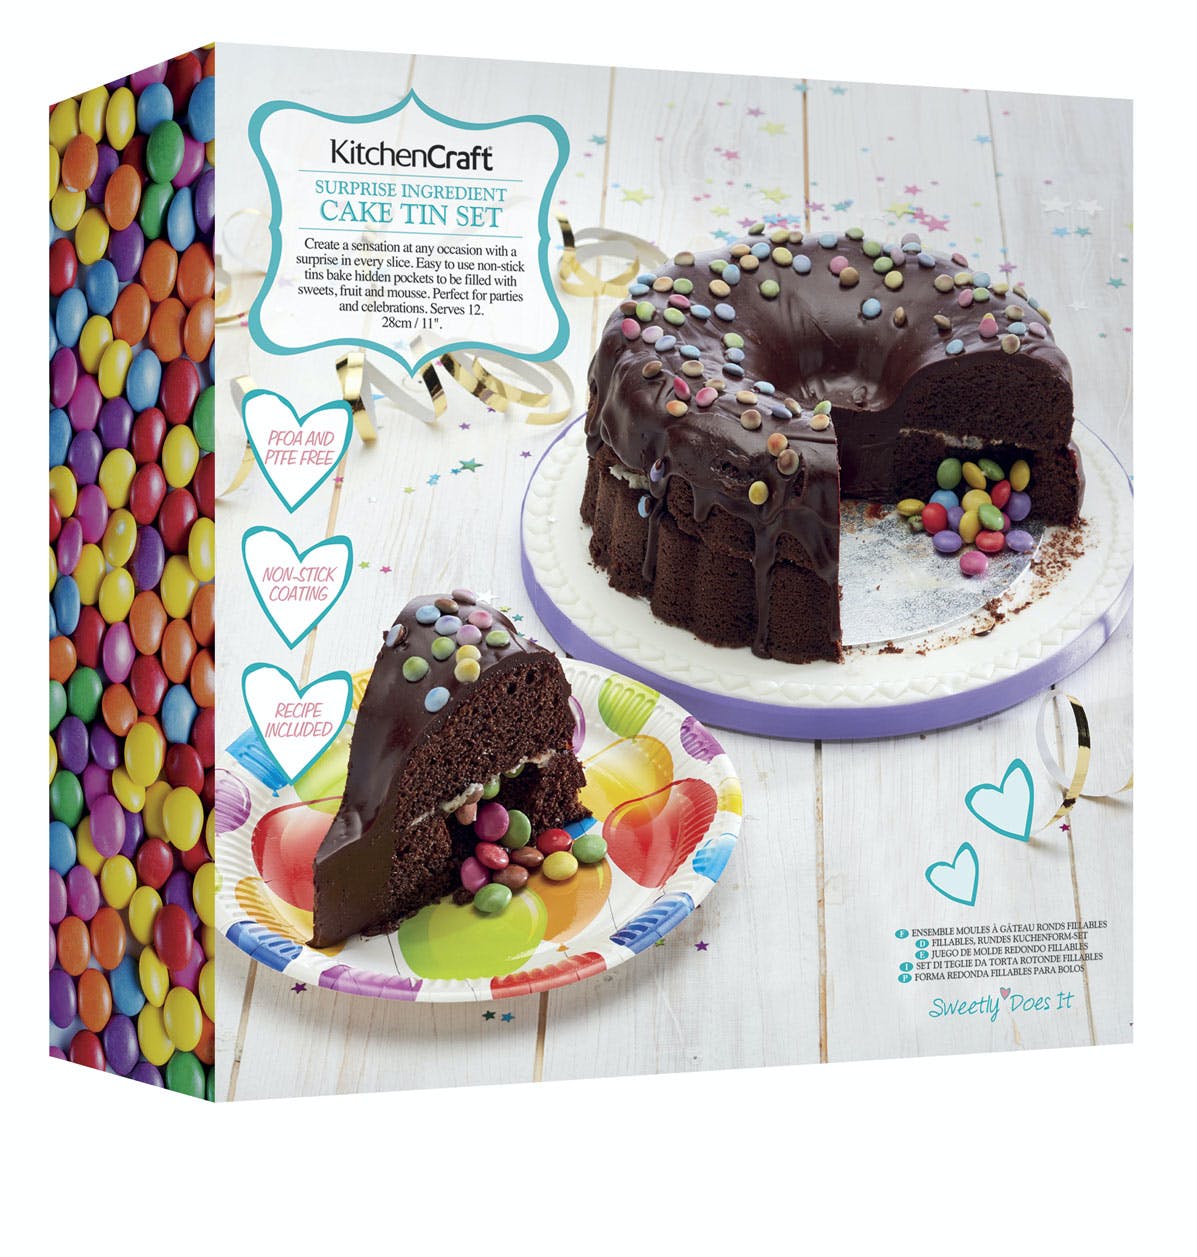 Sweetly Does It “Surprise Ingredient” Fillable Ring Cake Tin / Piñata Cake Baking Pan - The Cooks Cupboard Ltd